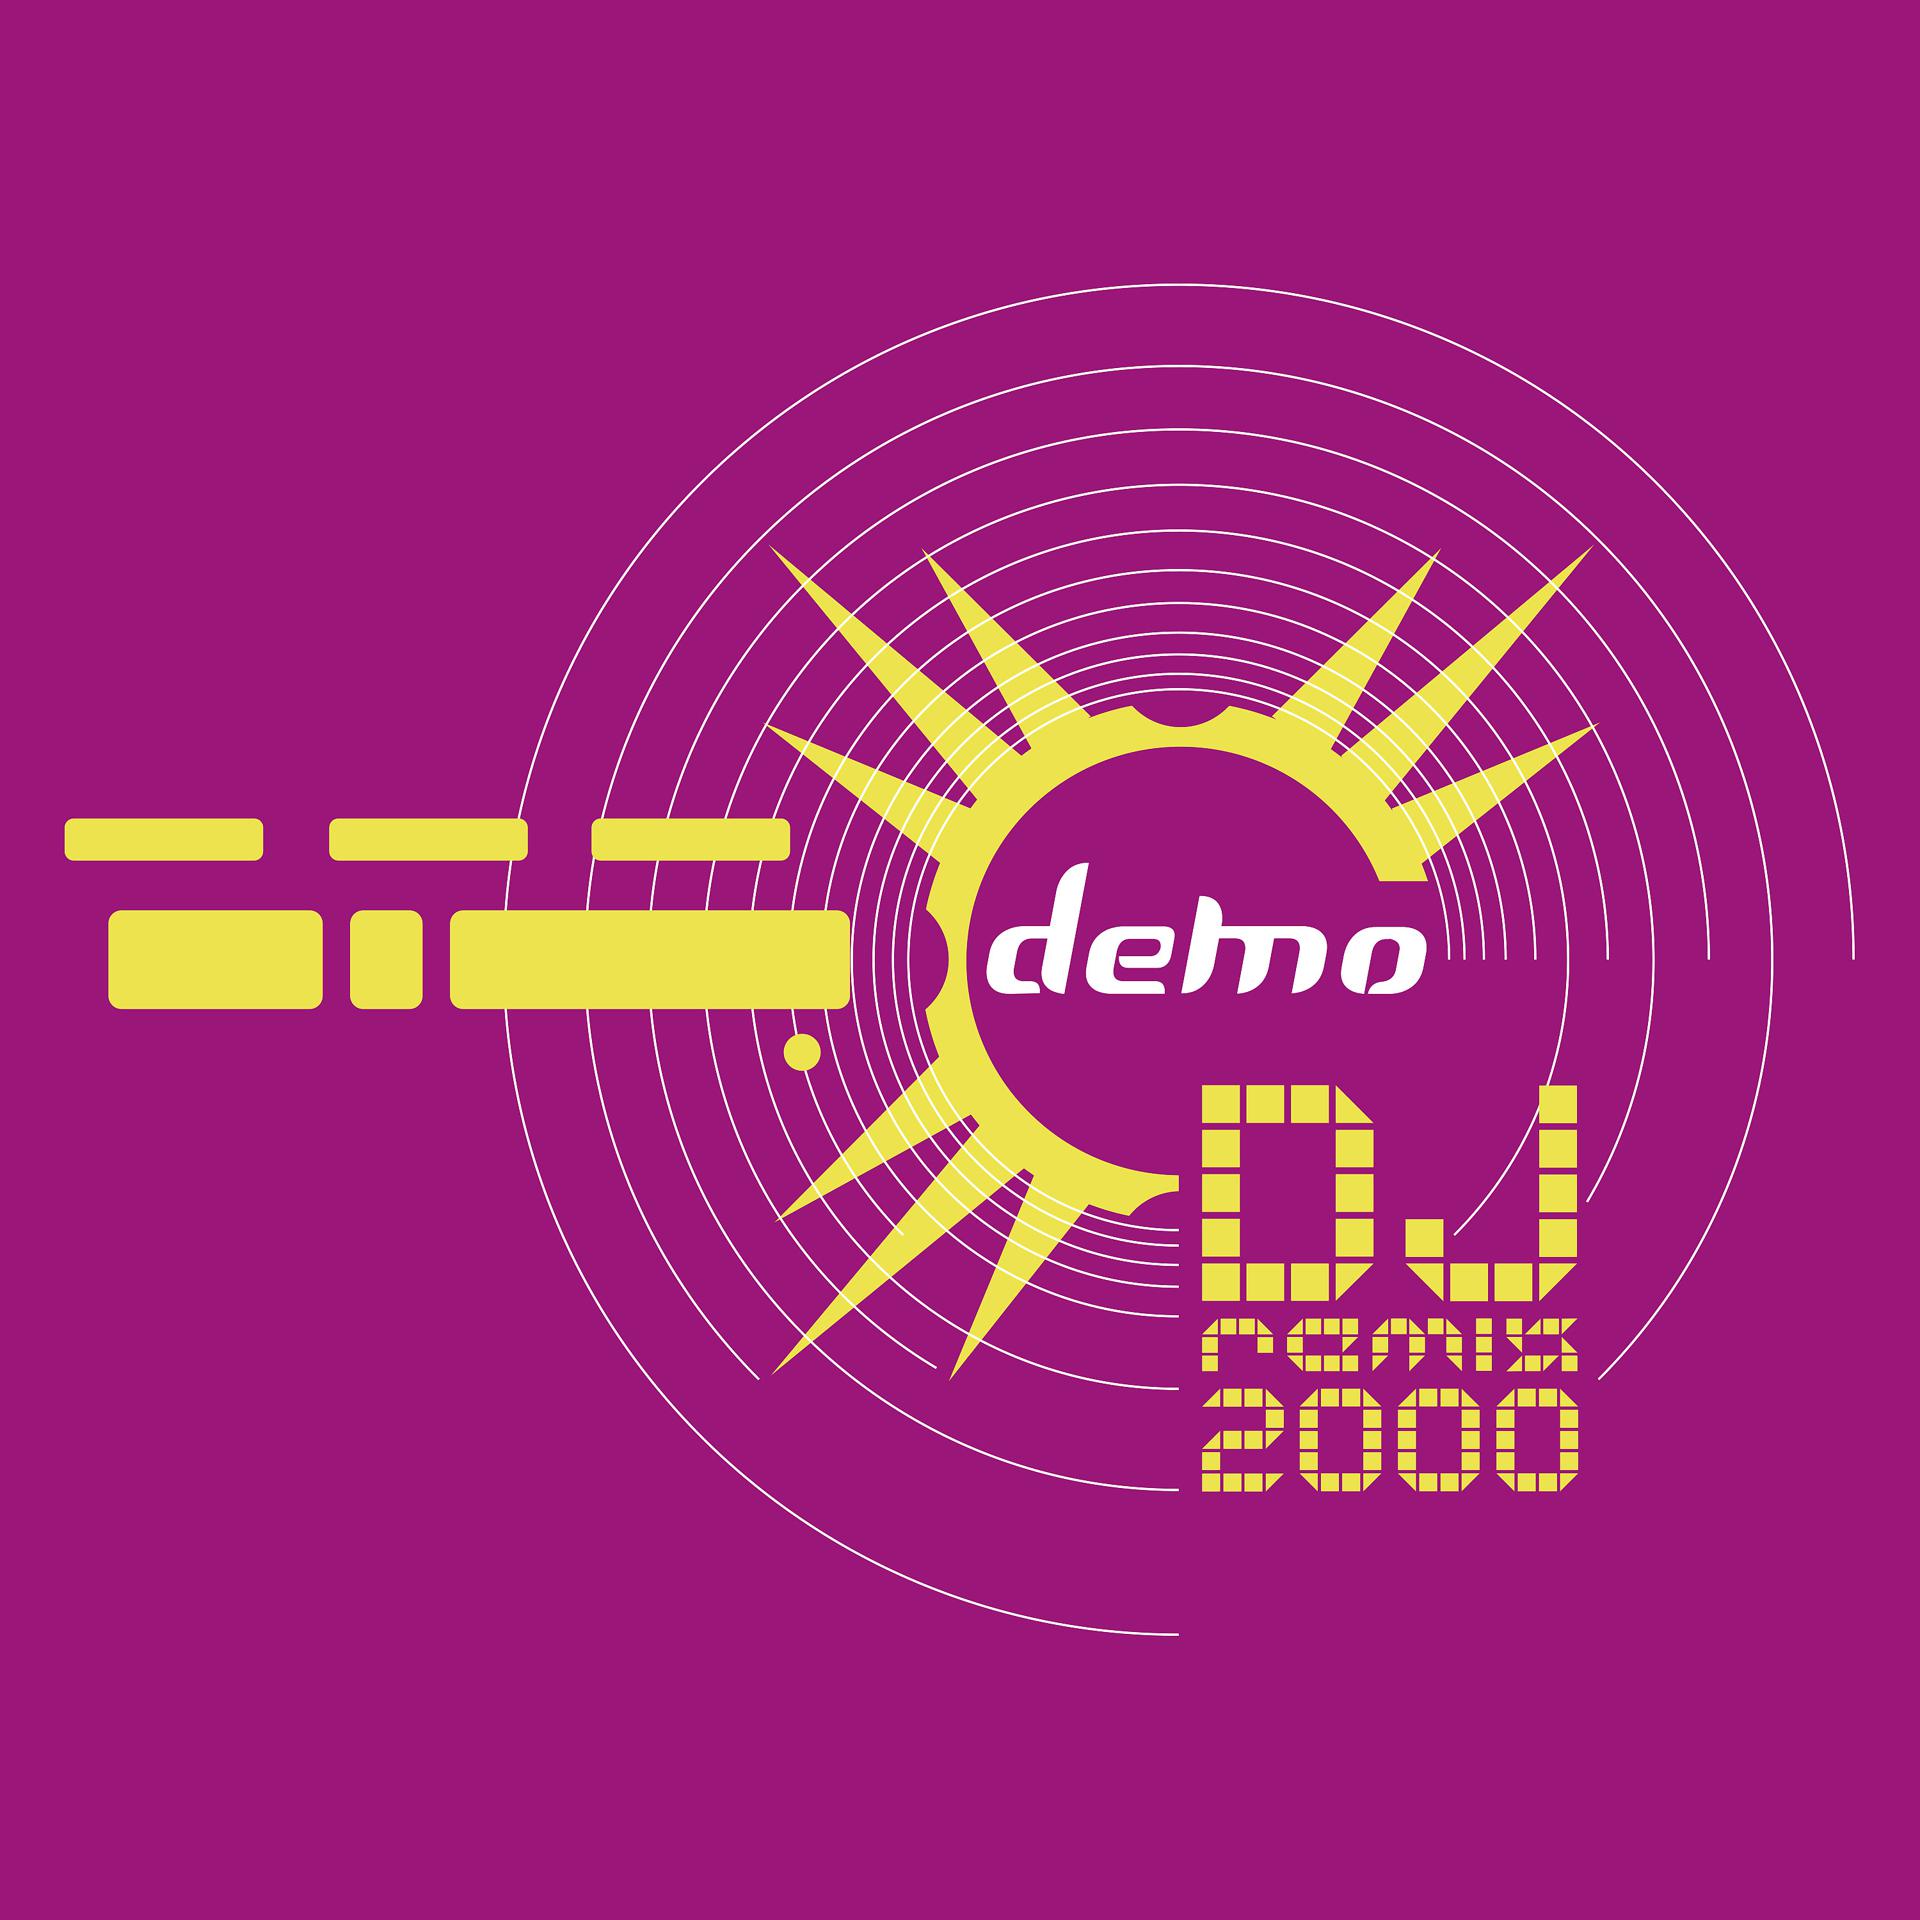 Демо 2000. DJ Remix 2000 демо. Демо альбомы 2000. Demo 2000 лет. Знаешь ремикс слушать